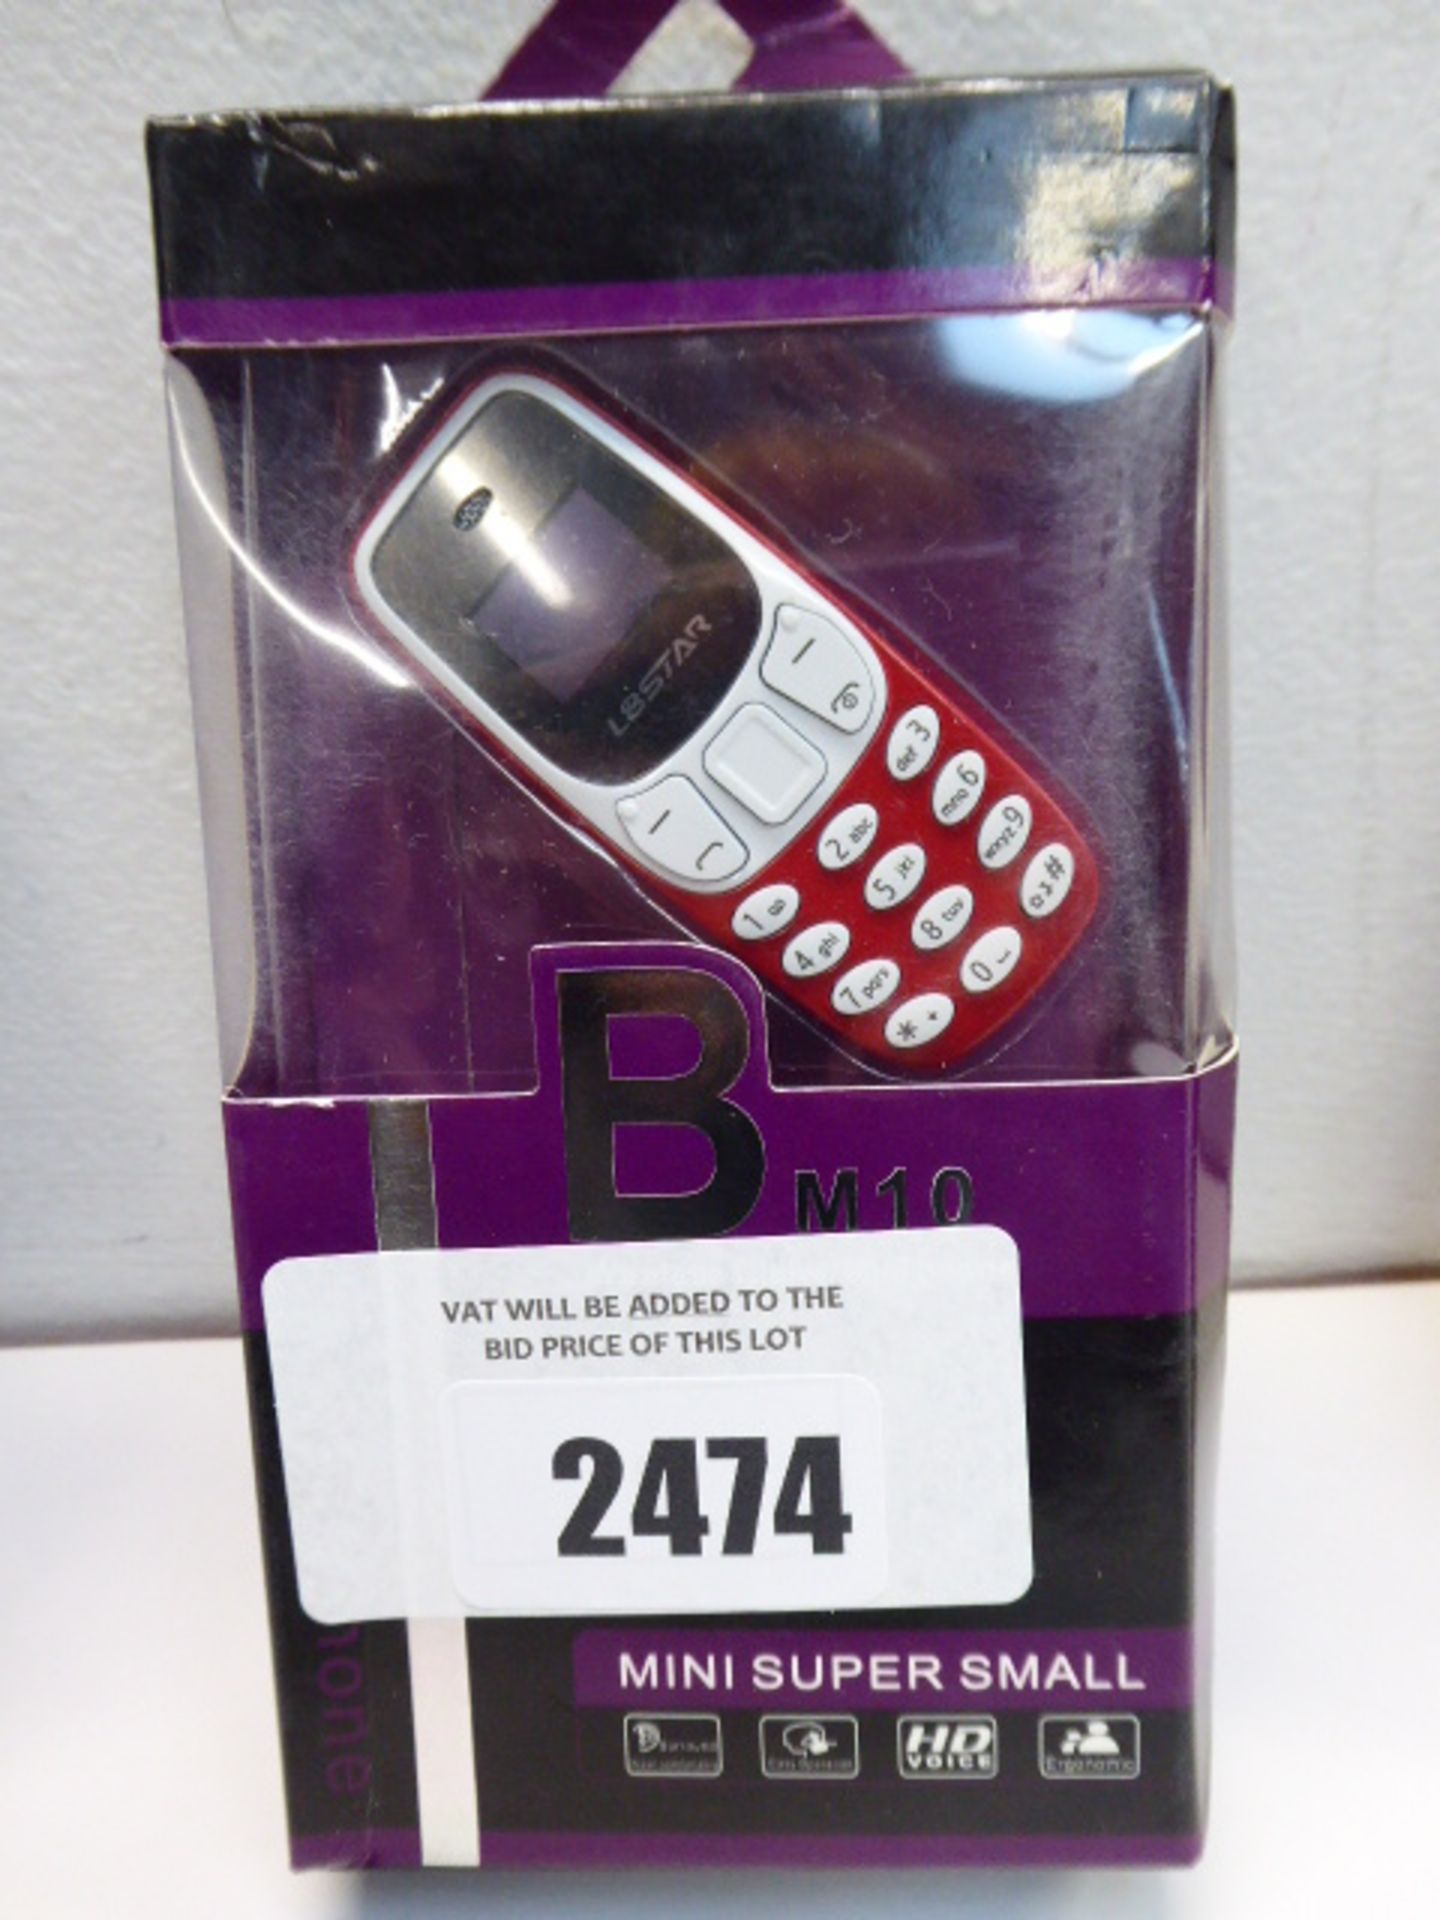 Bm10 mini moibile phone boxed.